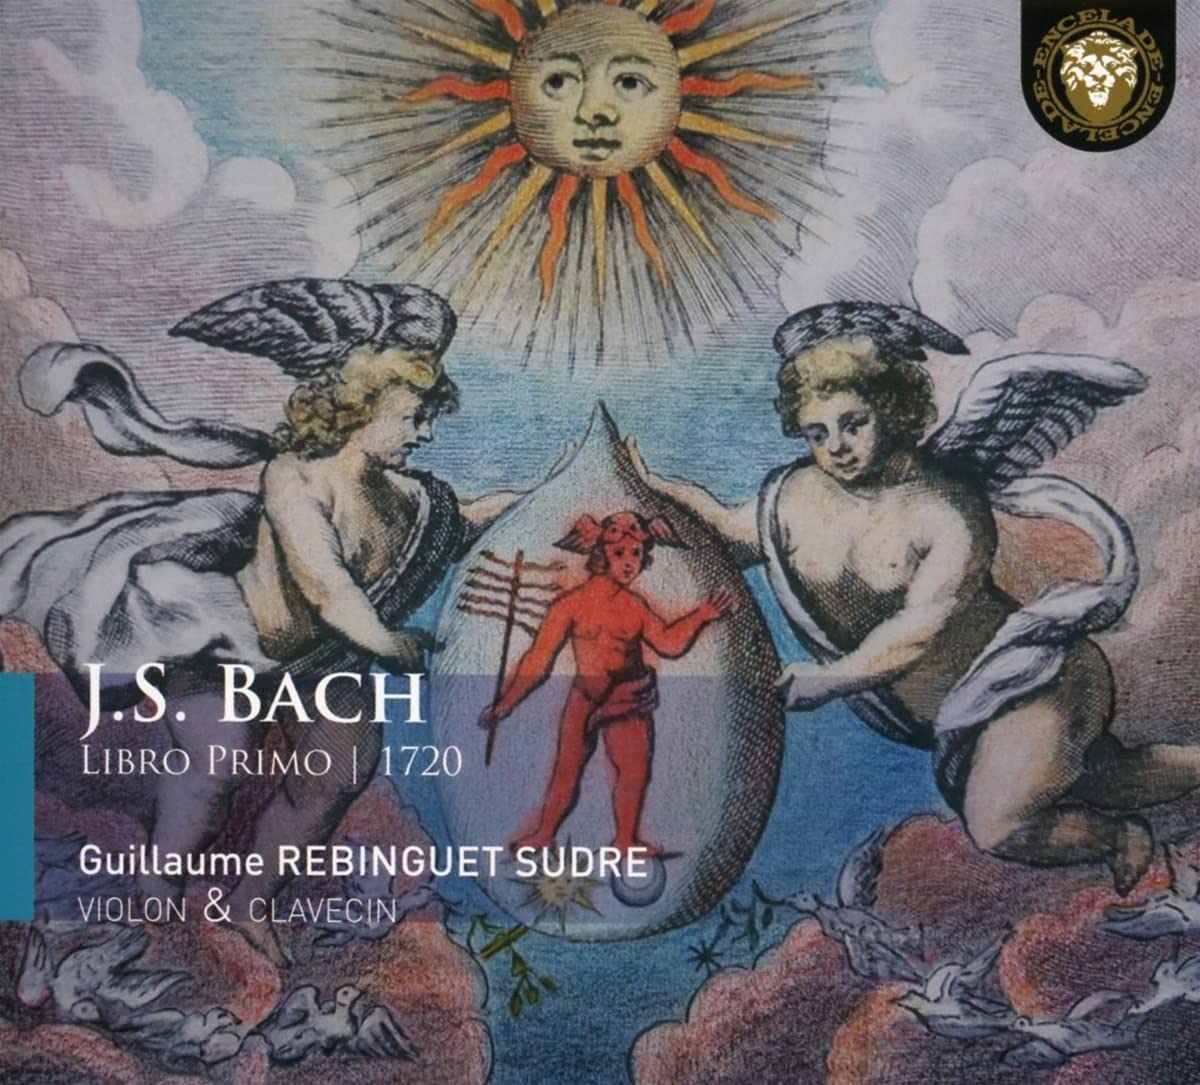 Bach Libro Primo Guillaume Rebinguet Sudre